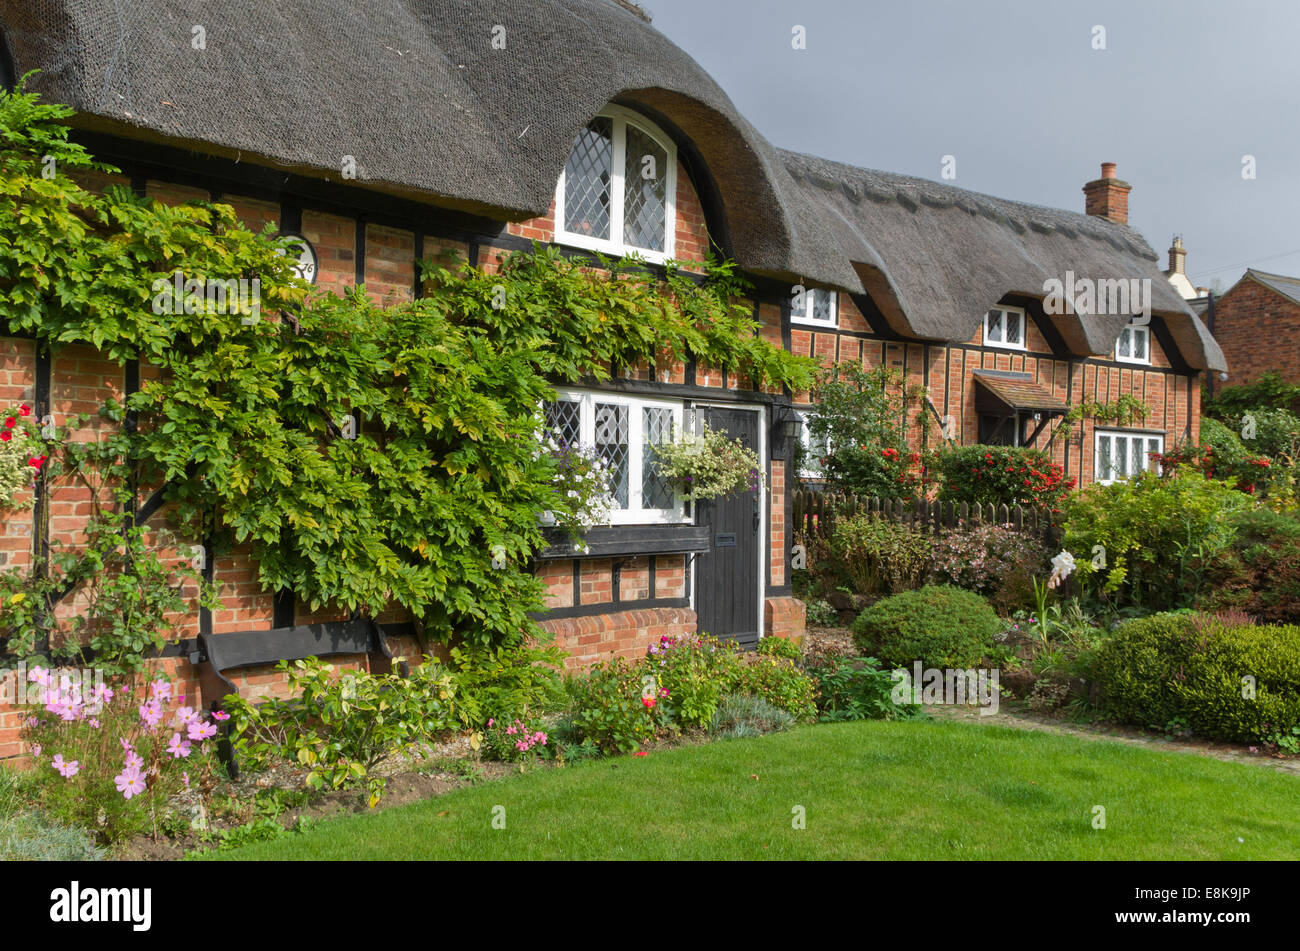 Graziosi cottage con il tetto di paglia nel villaggio di Ampthill, Bedfordshire, Regno Unito Foto Stock